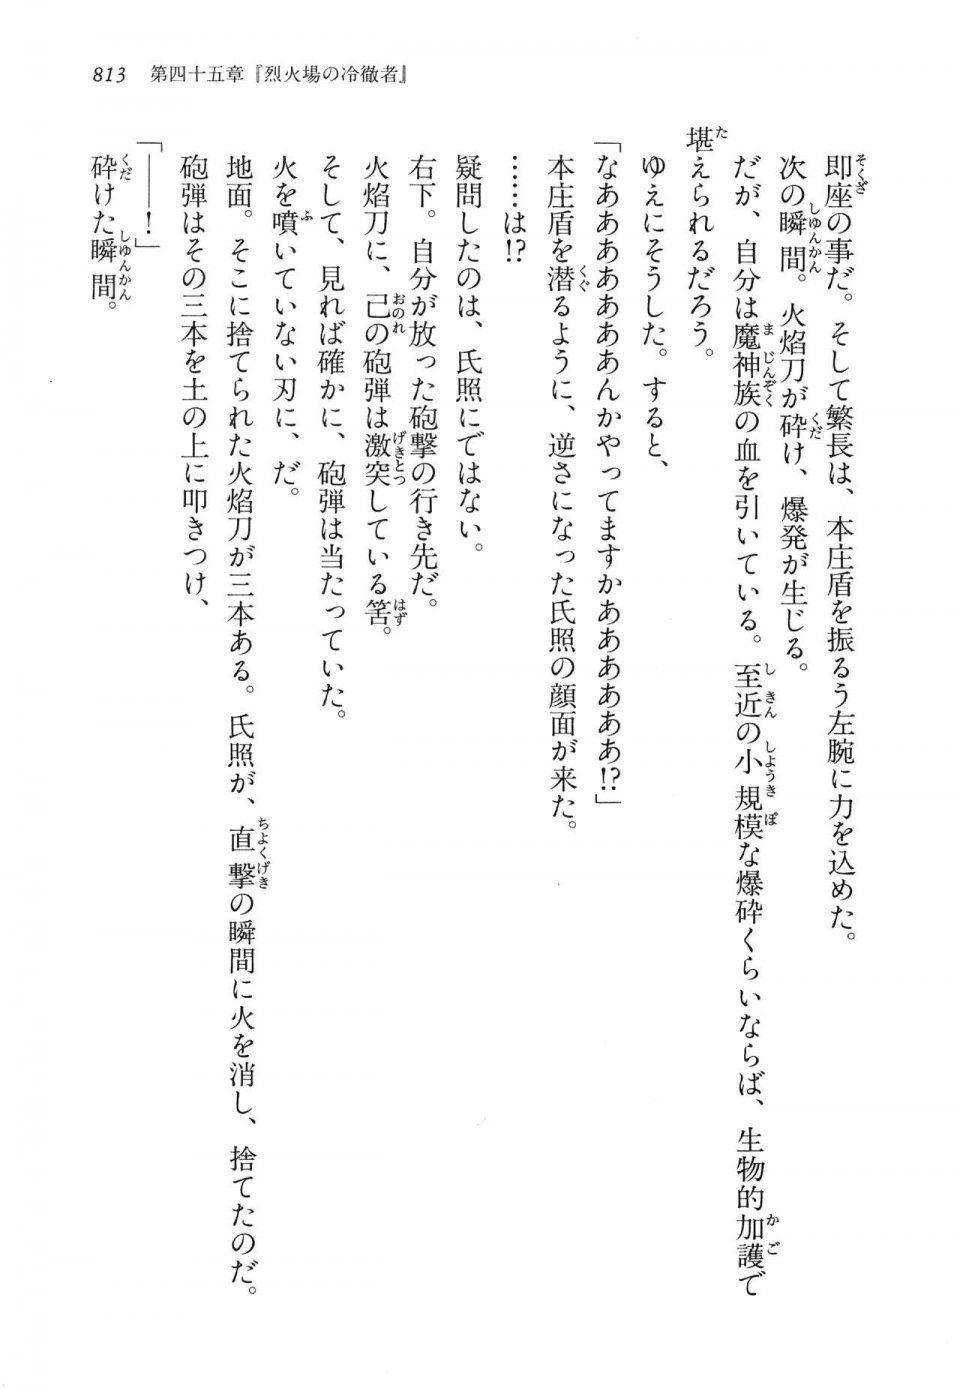 Kyoukai Senjou no Horizon LN Vol 14(6B) - Photo #813